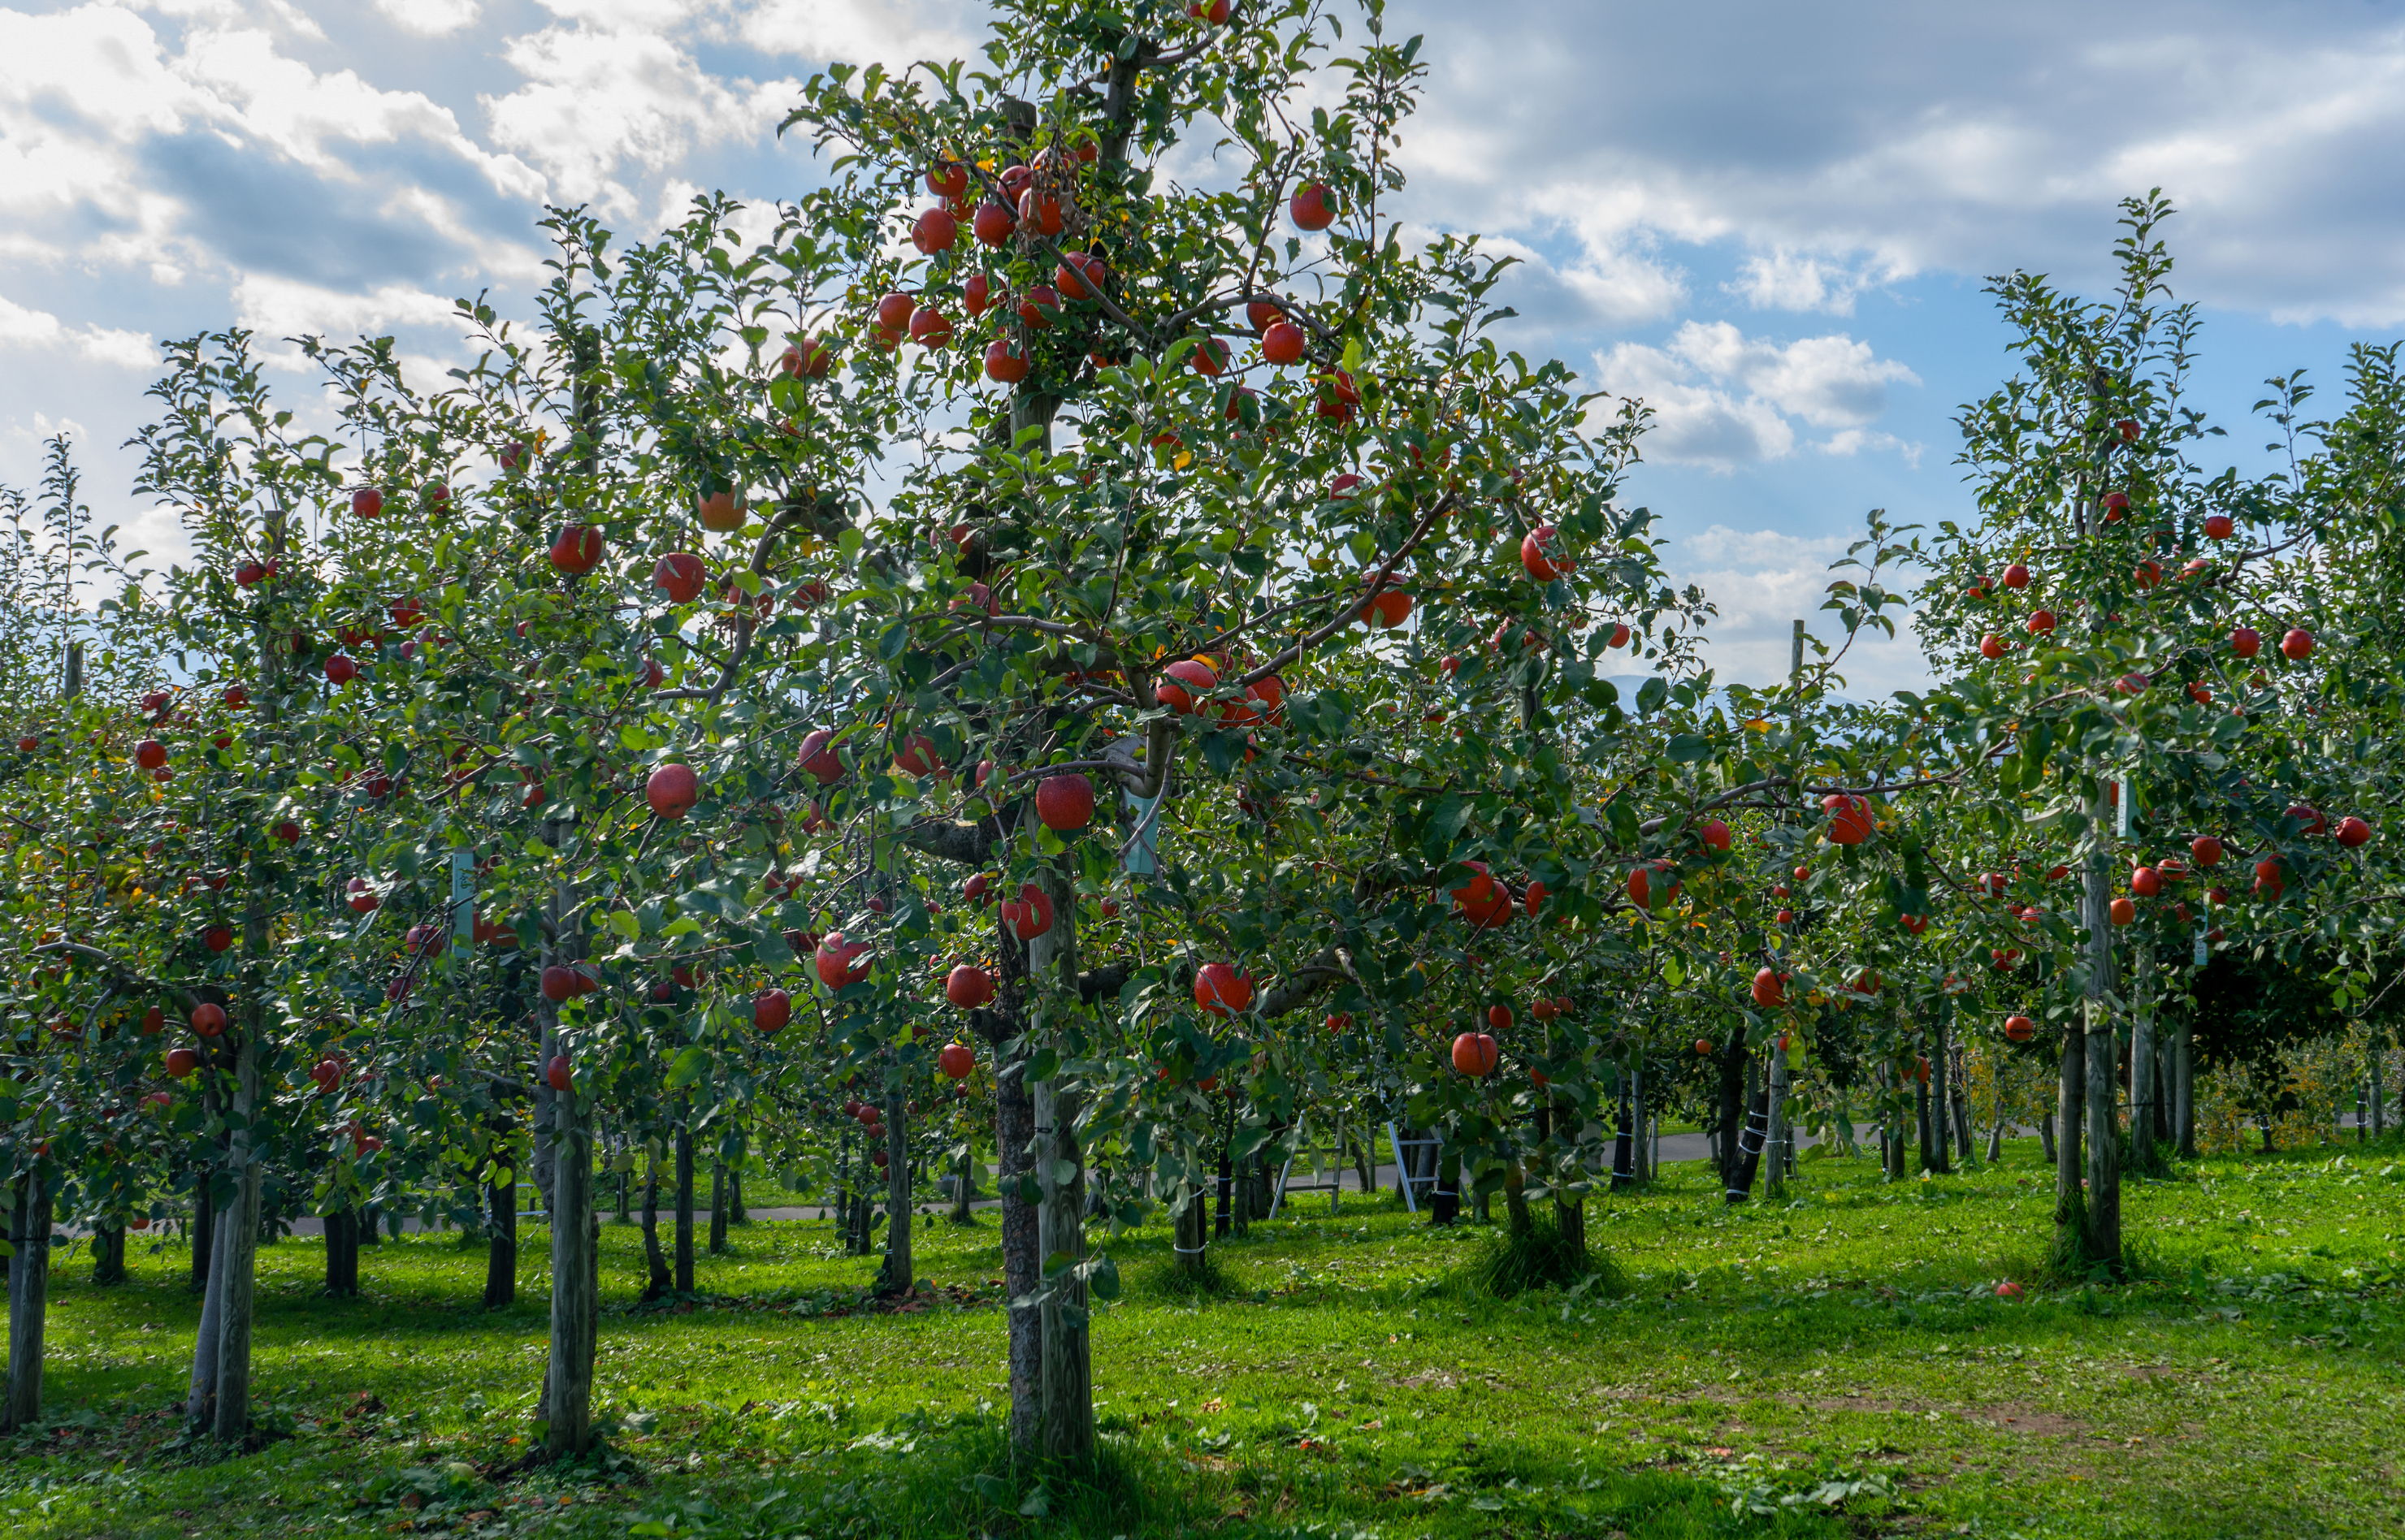 弘前市にある「弘前市りんご公園」